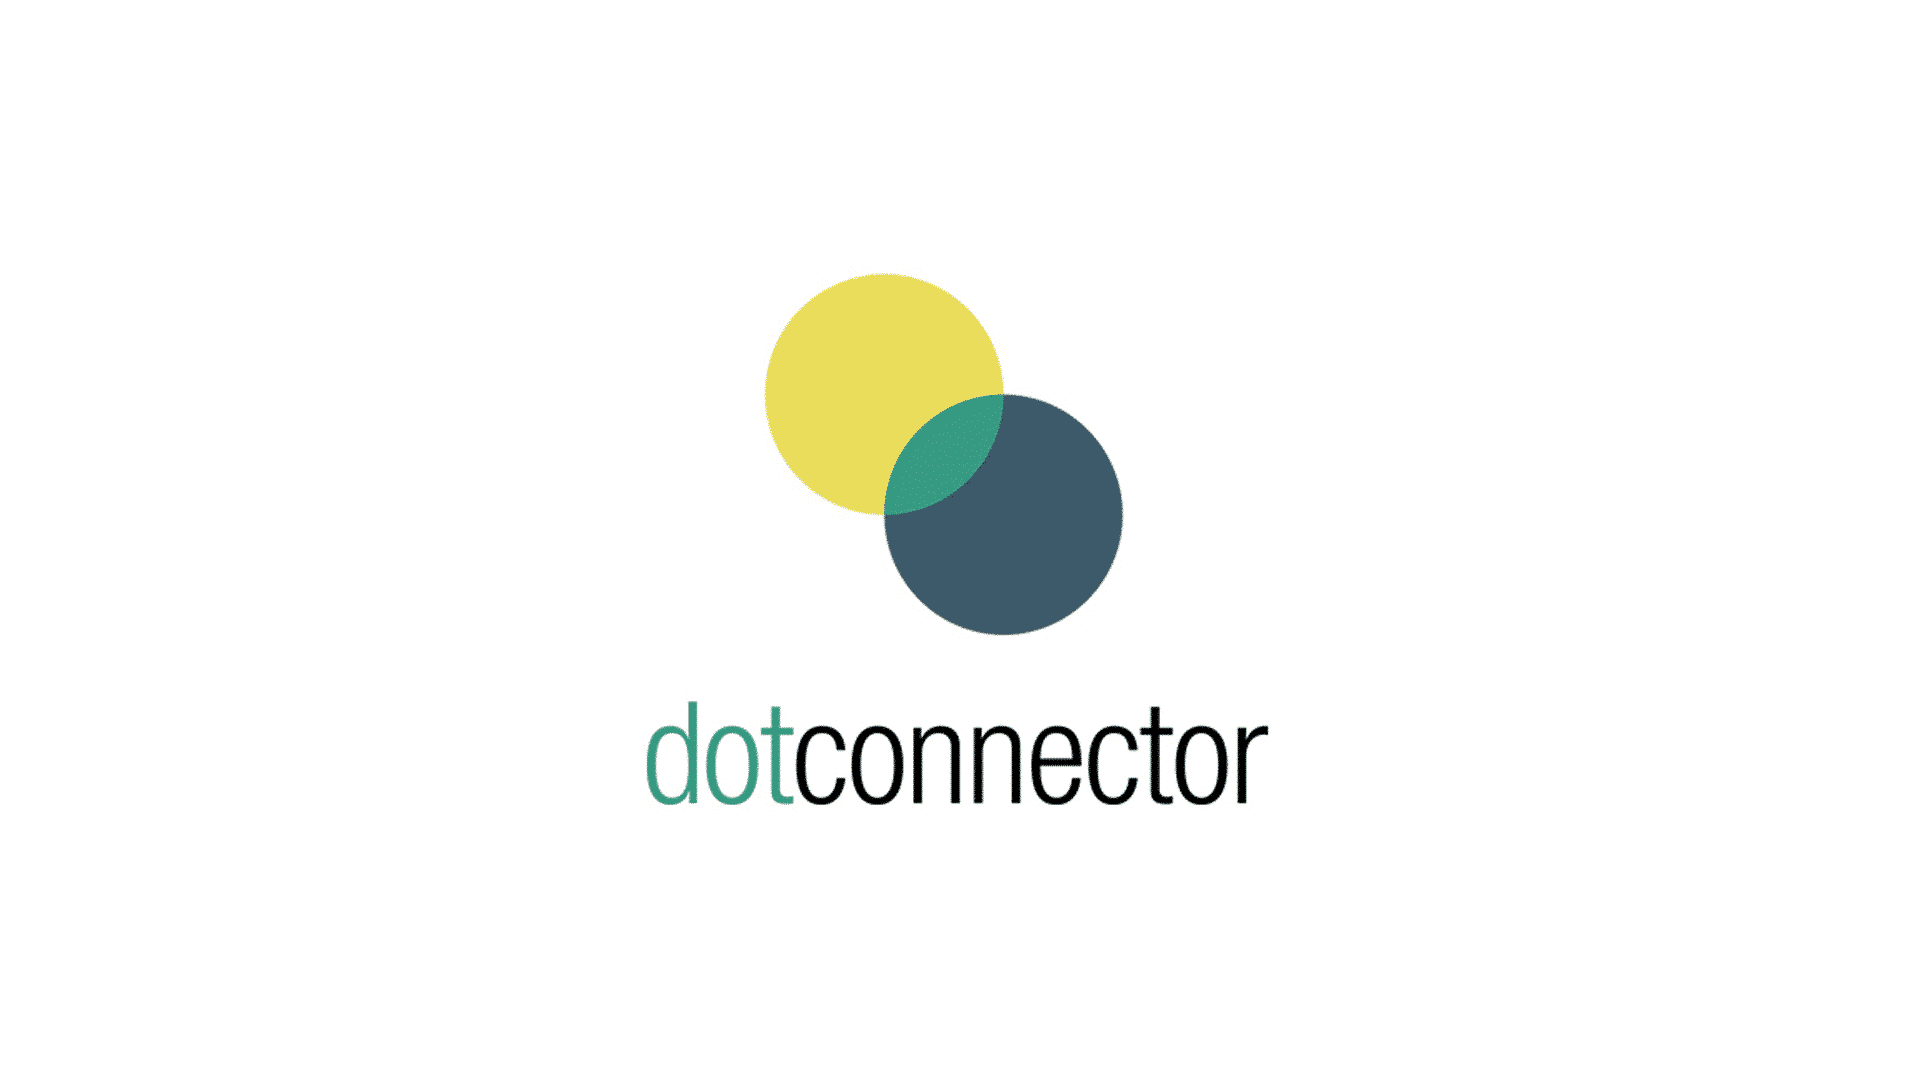 dotconnector logo